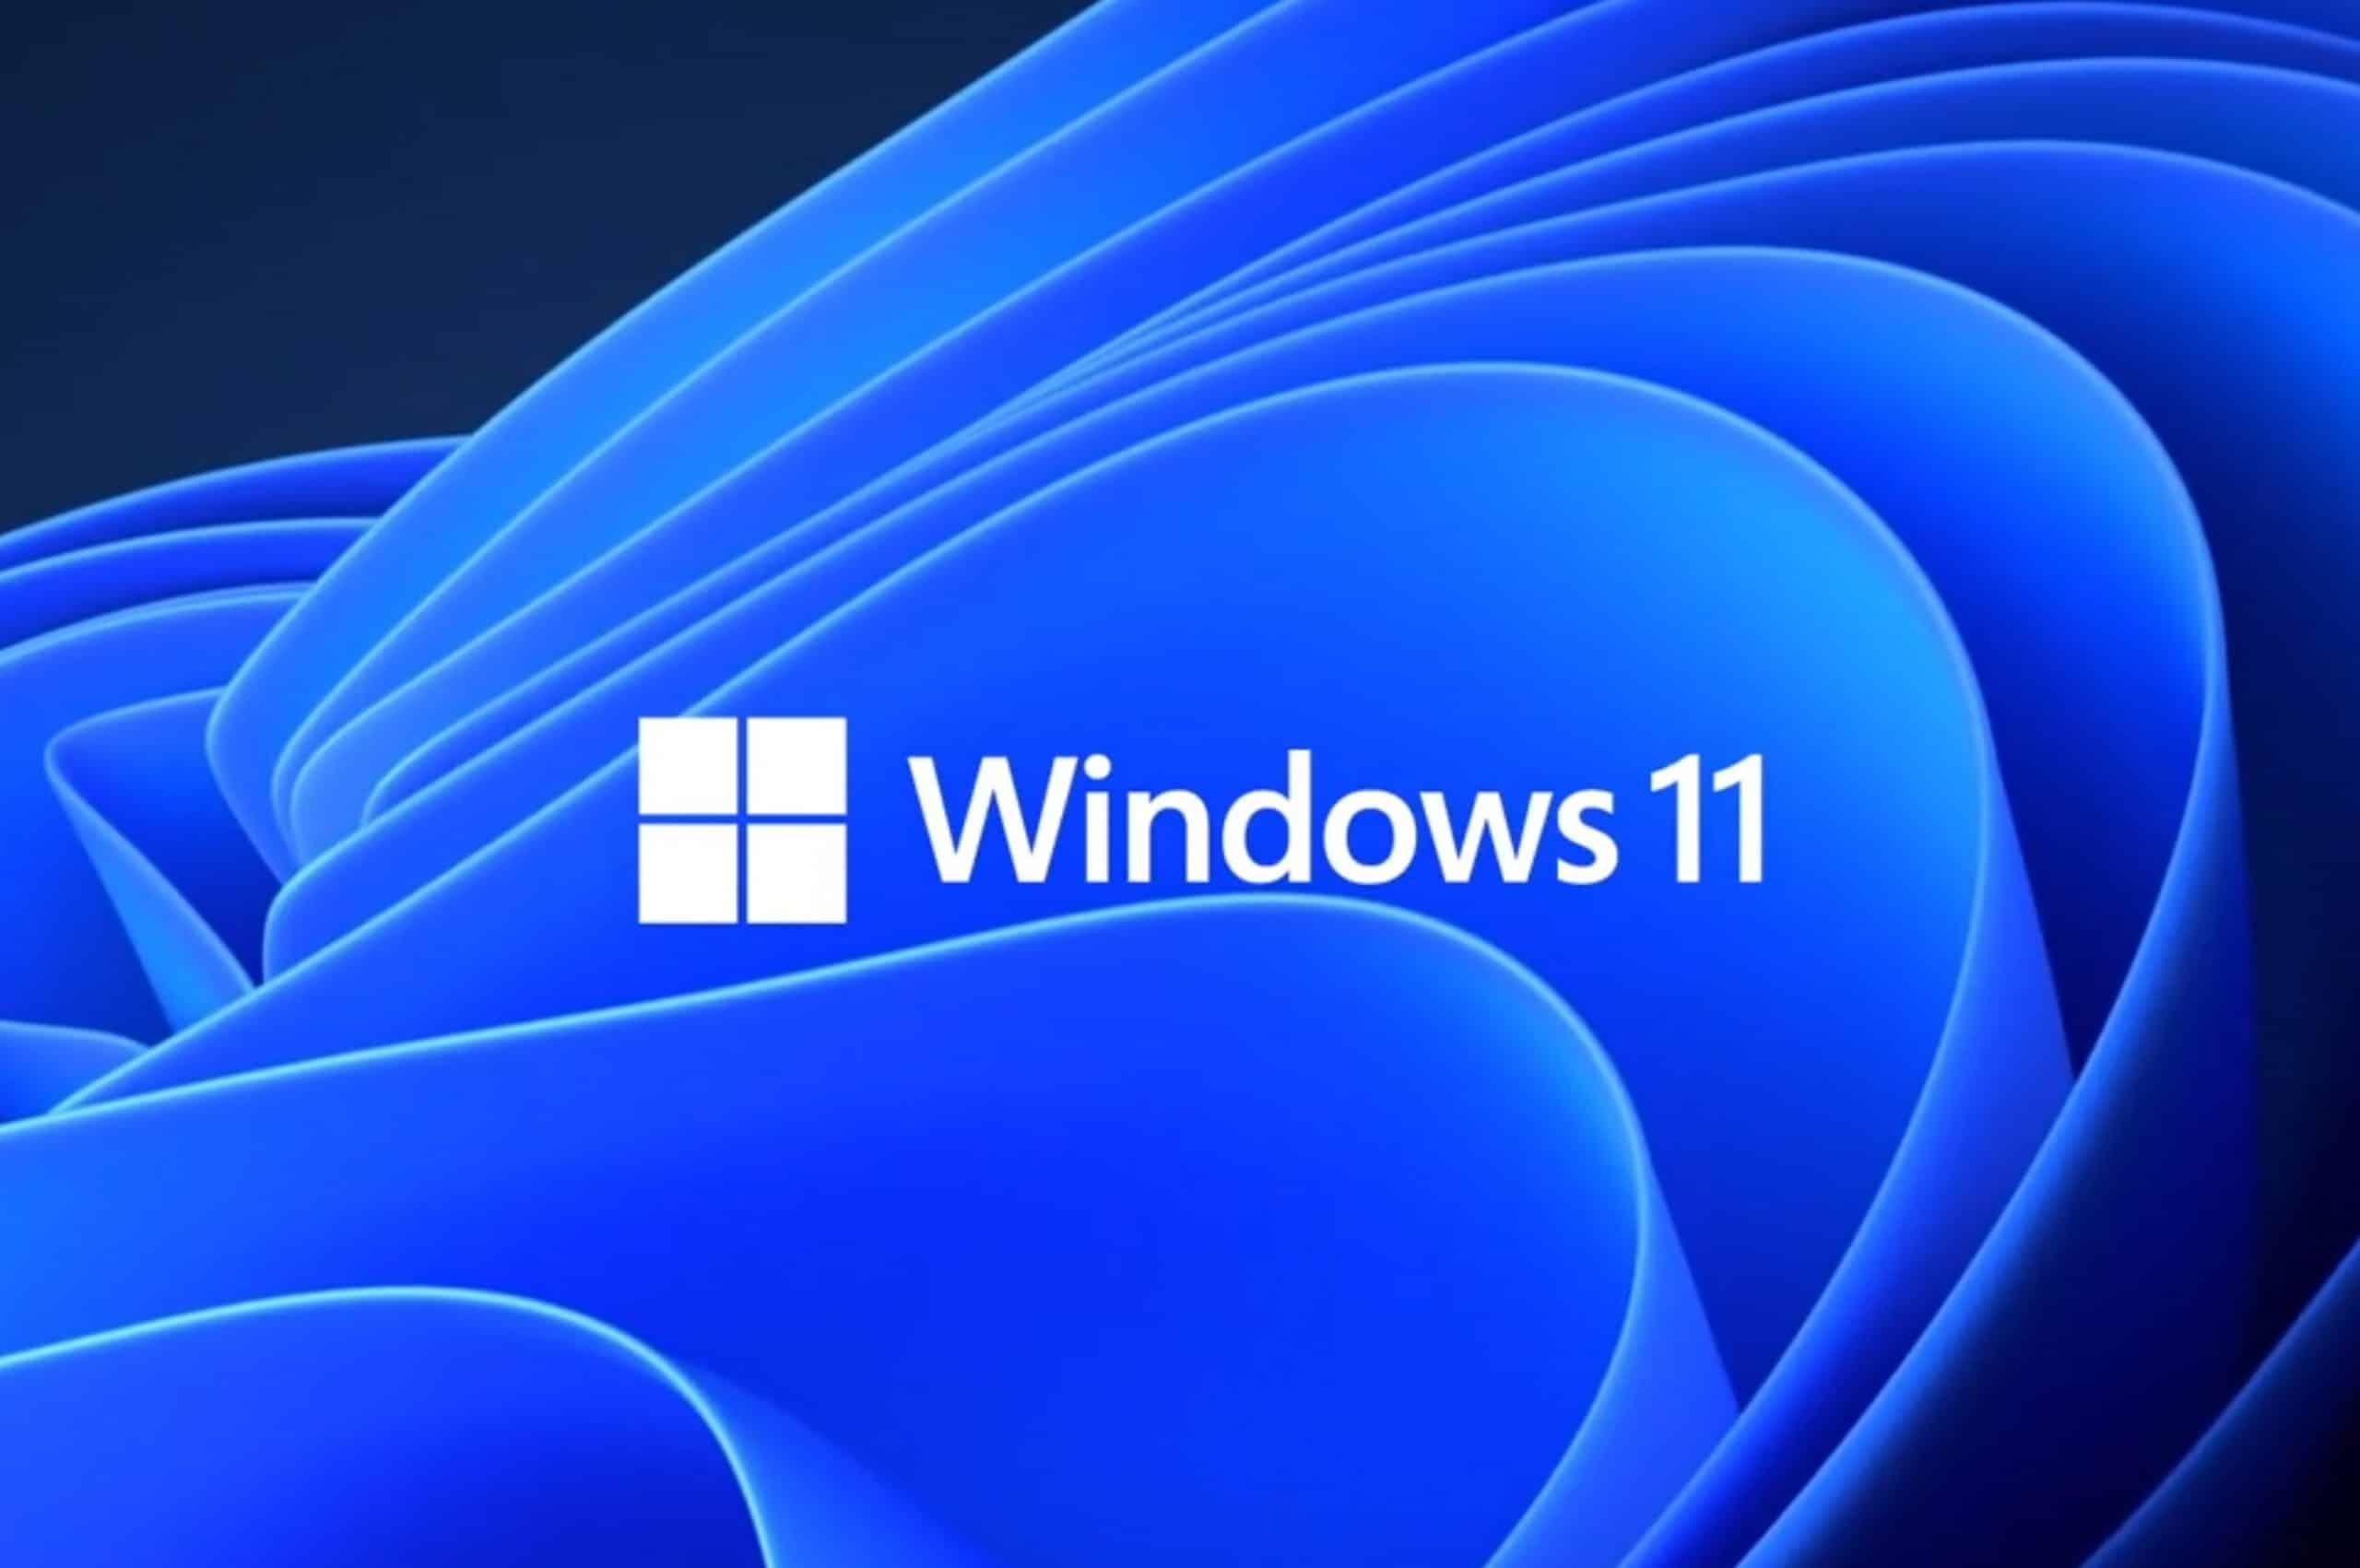 Indstillinger i Windows 11 får snart en ny fane Start, som indeholder de mest brugte kontrolelementer